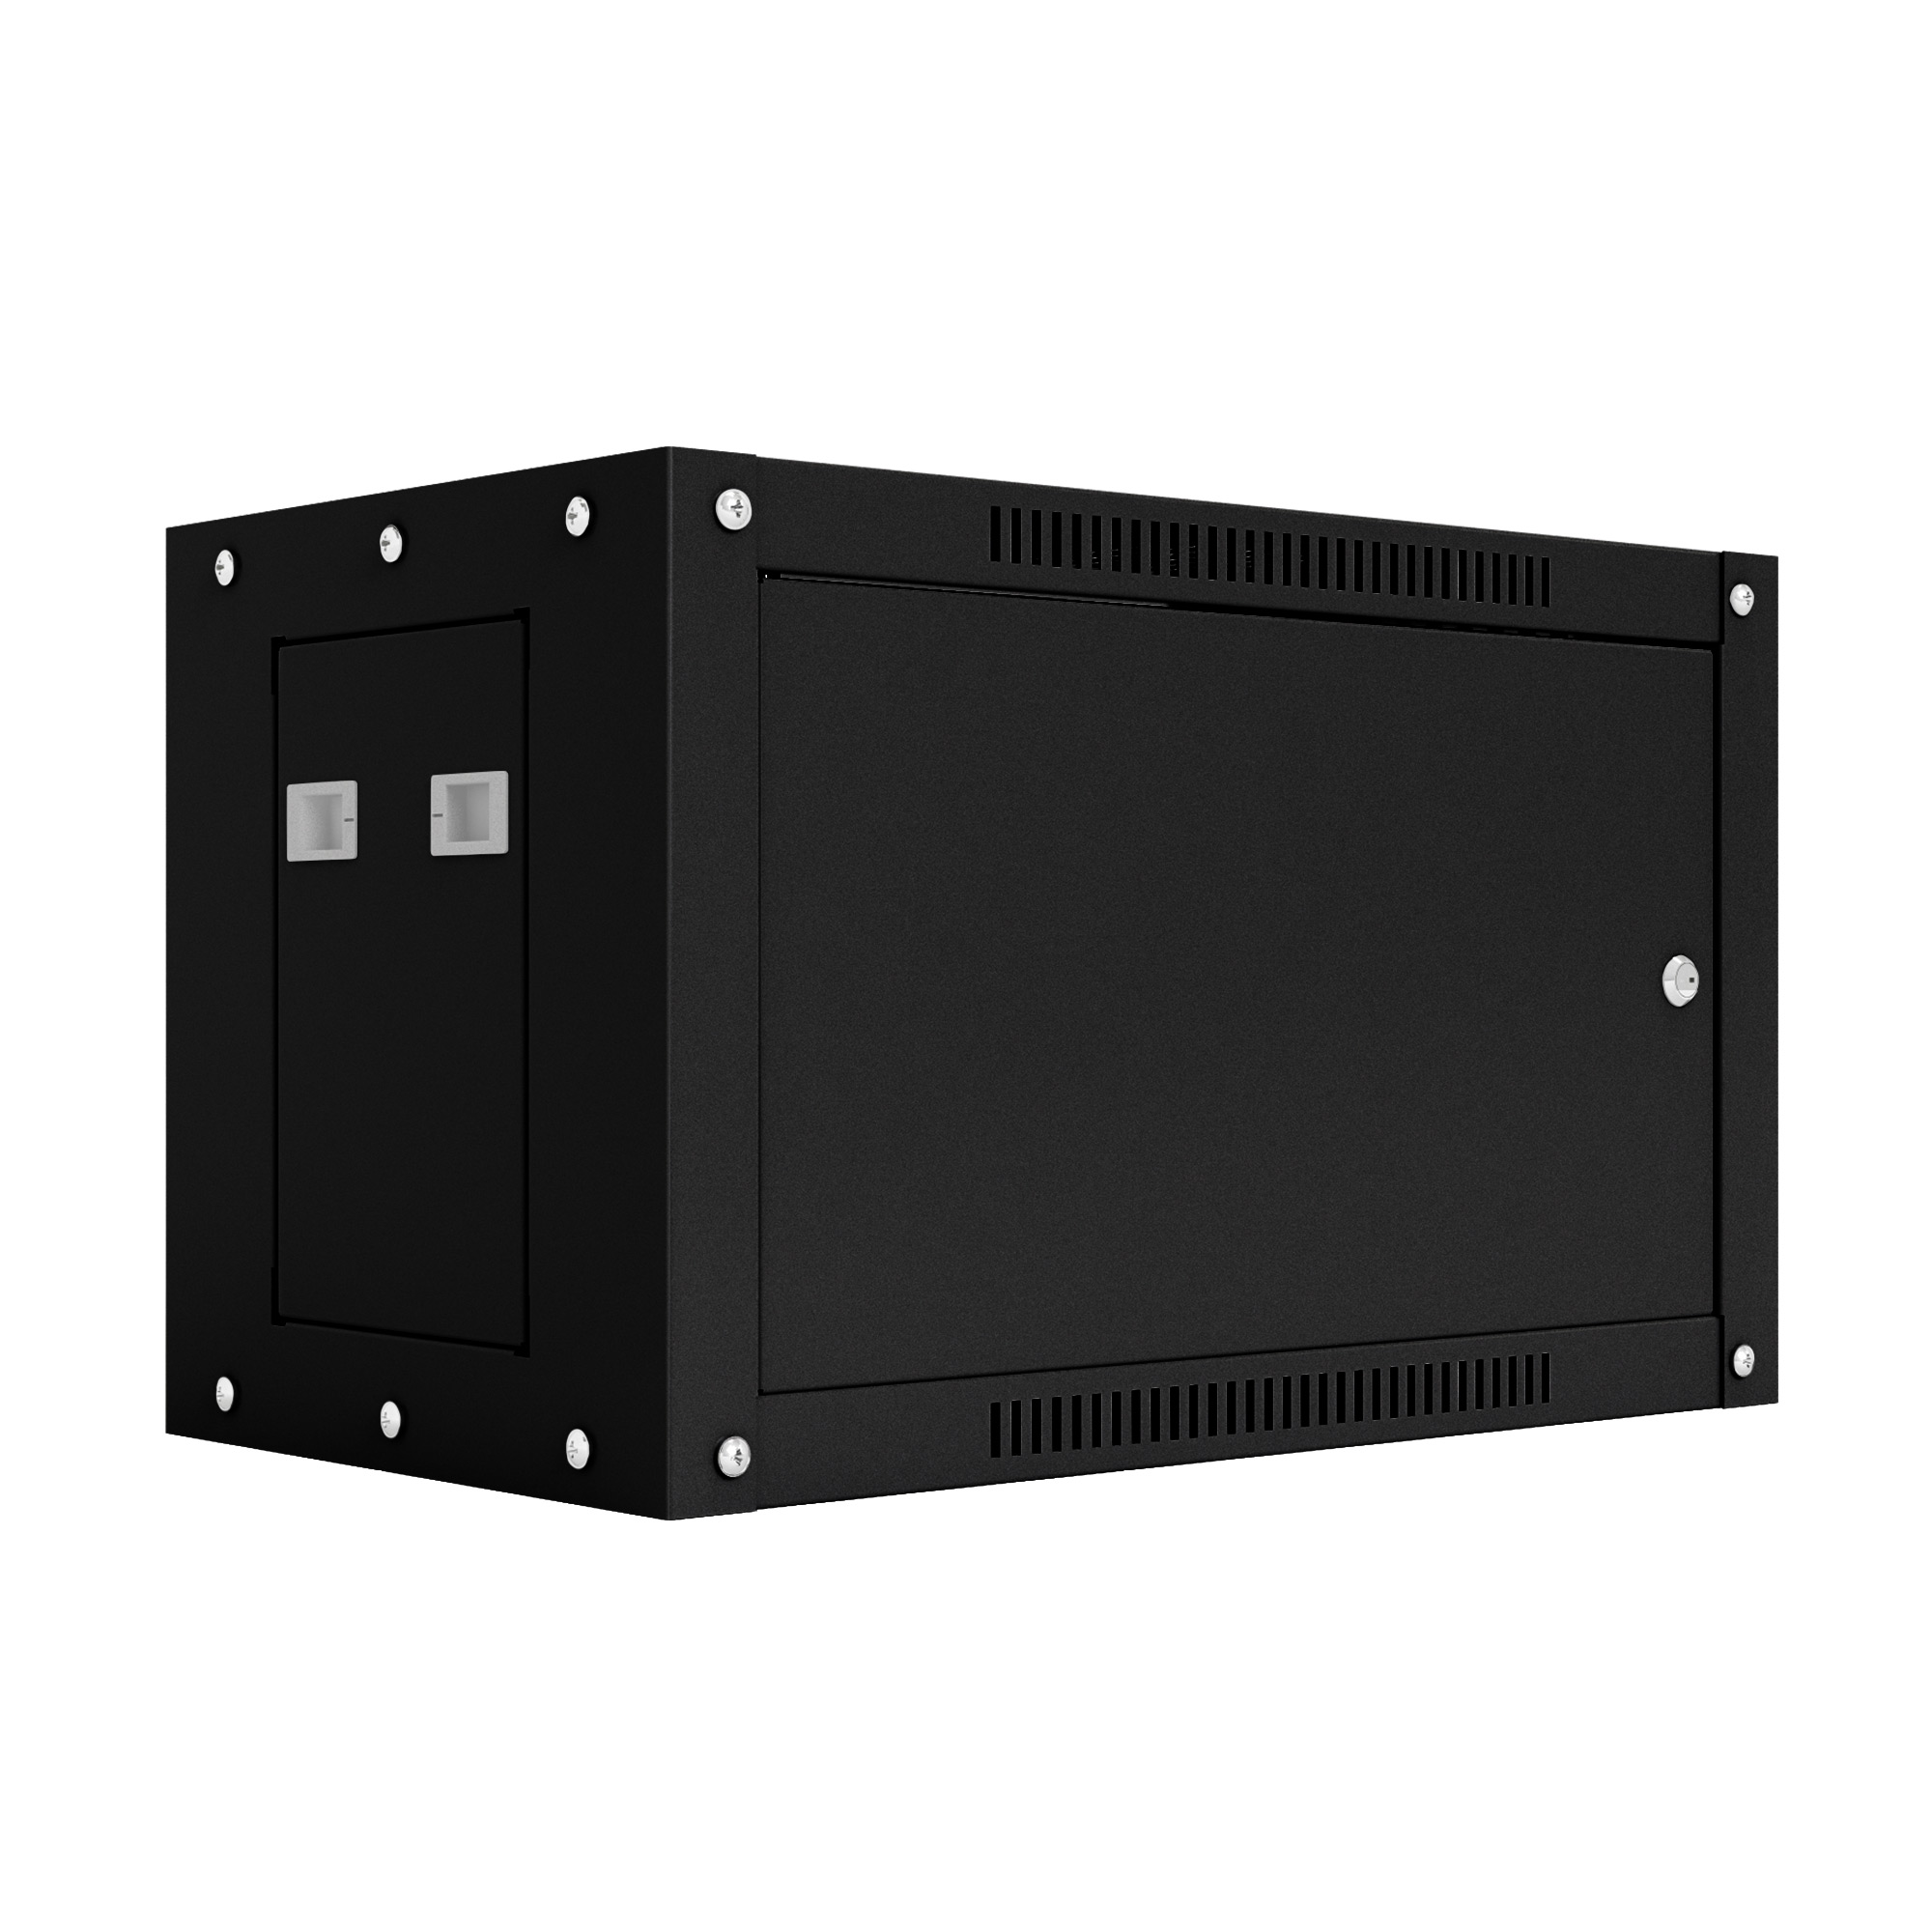 Шкаф настенный телекоммуникационный NTSS WS 12U 600х600х635мм, 2 профиля 19, дверь сплошная металл, боковые стенки съемные, разобранный, черный RAL 9005